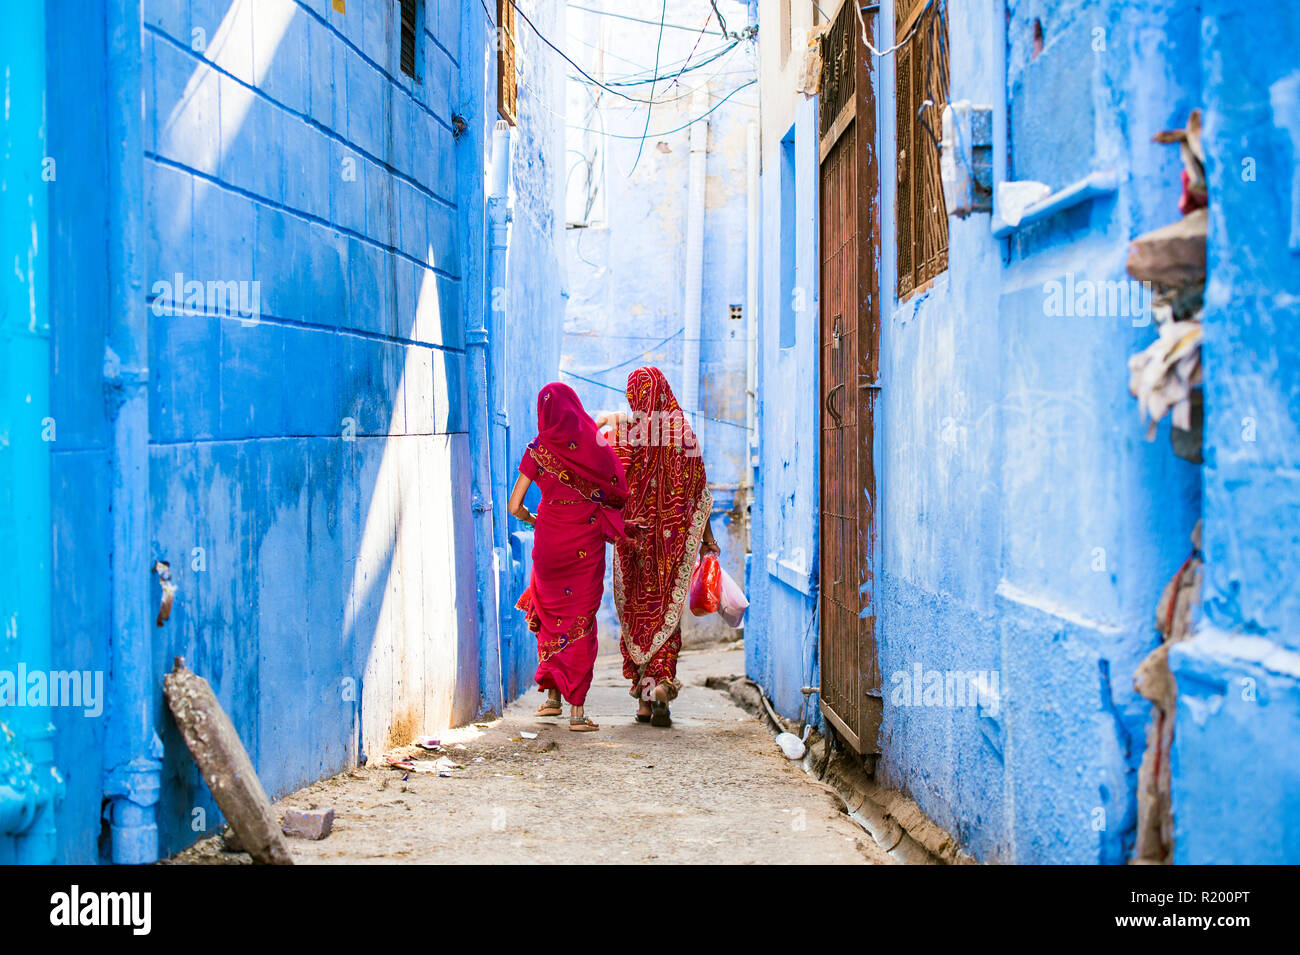 Zwei Frauen in der traditionellen indischen Sari gekleidet sind ein Spaziergang durch die engen Gassen von die blaue Stadt Jodhpur, Rajasthan, Indien. Stockfoto